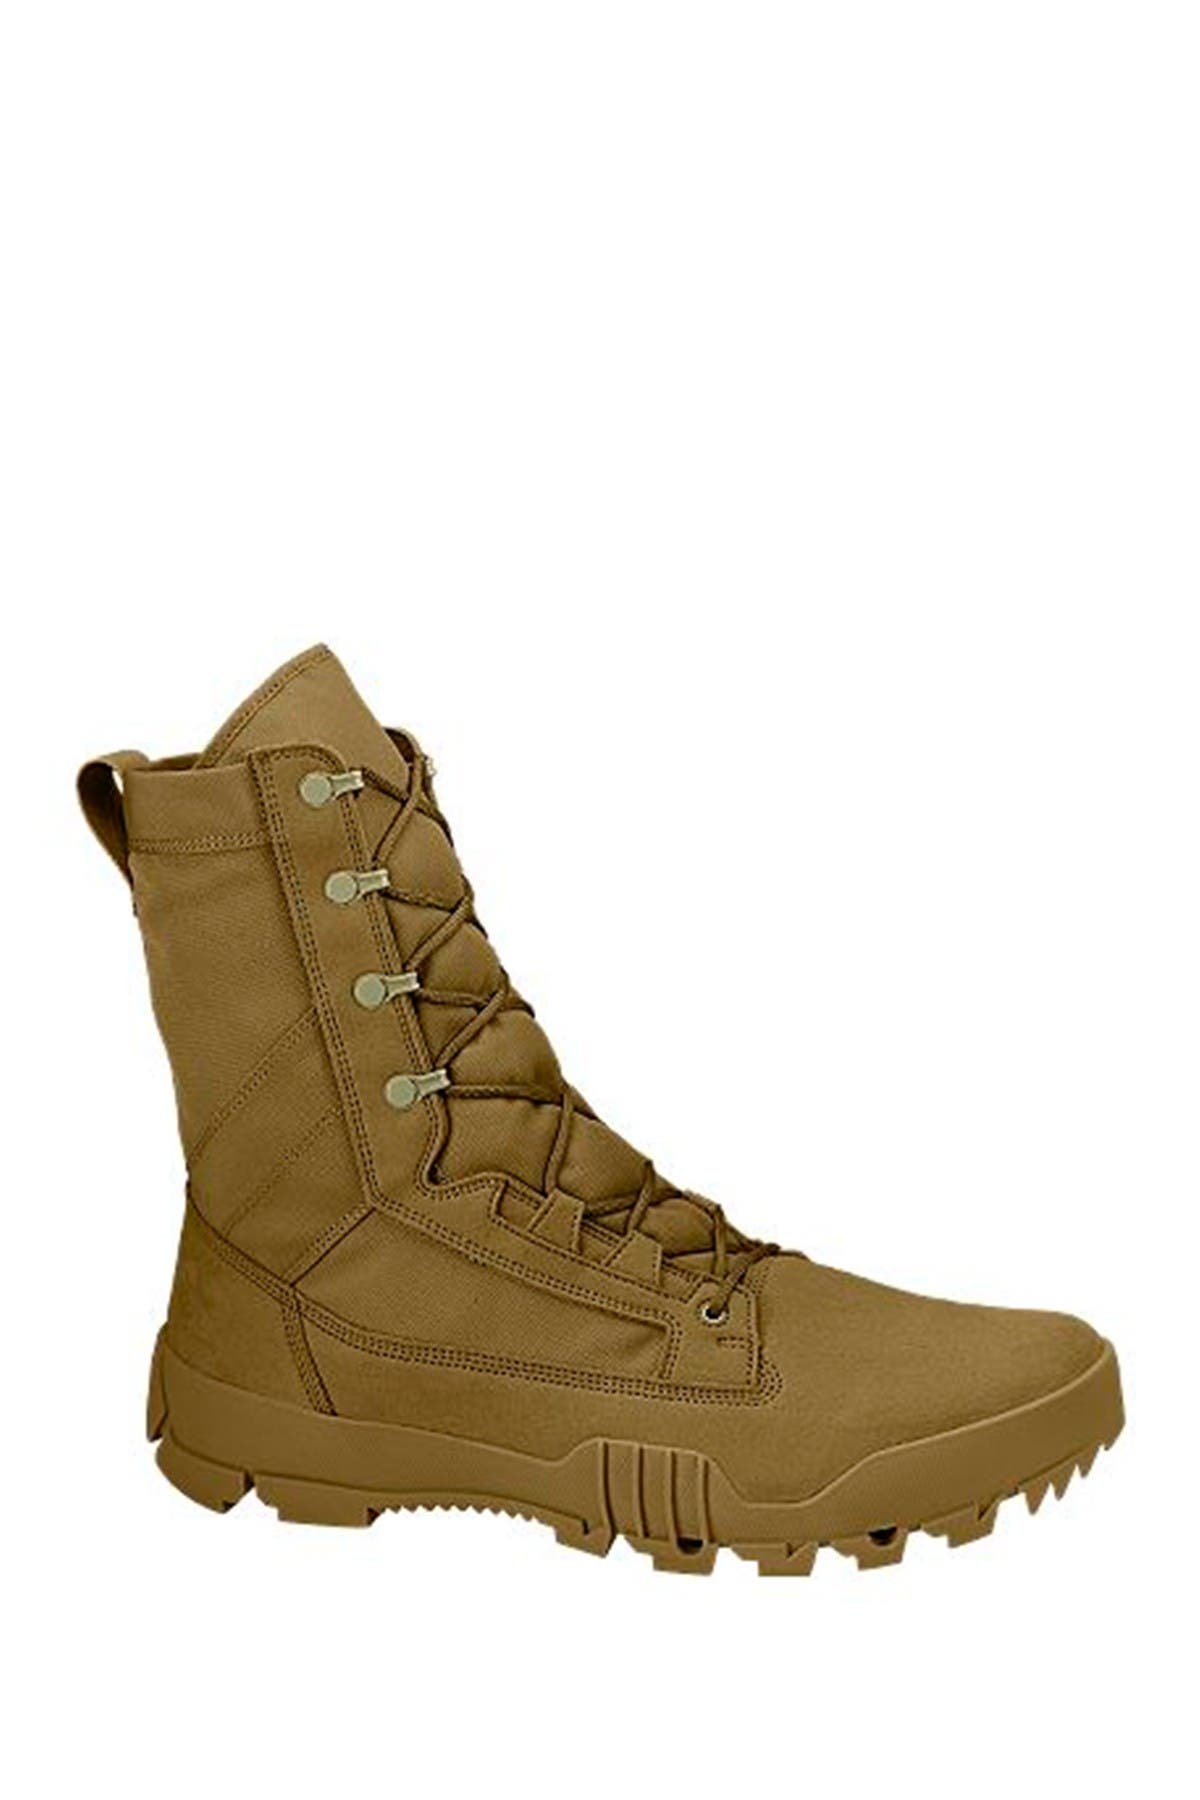 sfb jungle boot